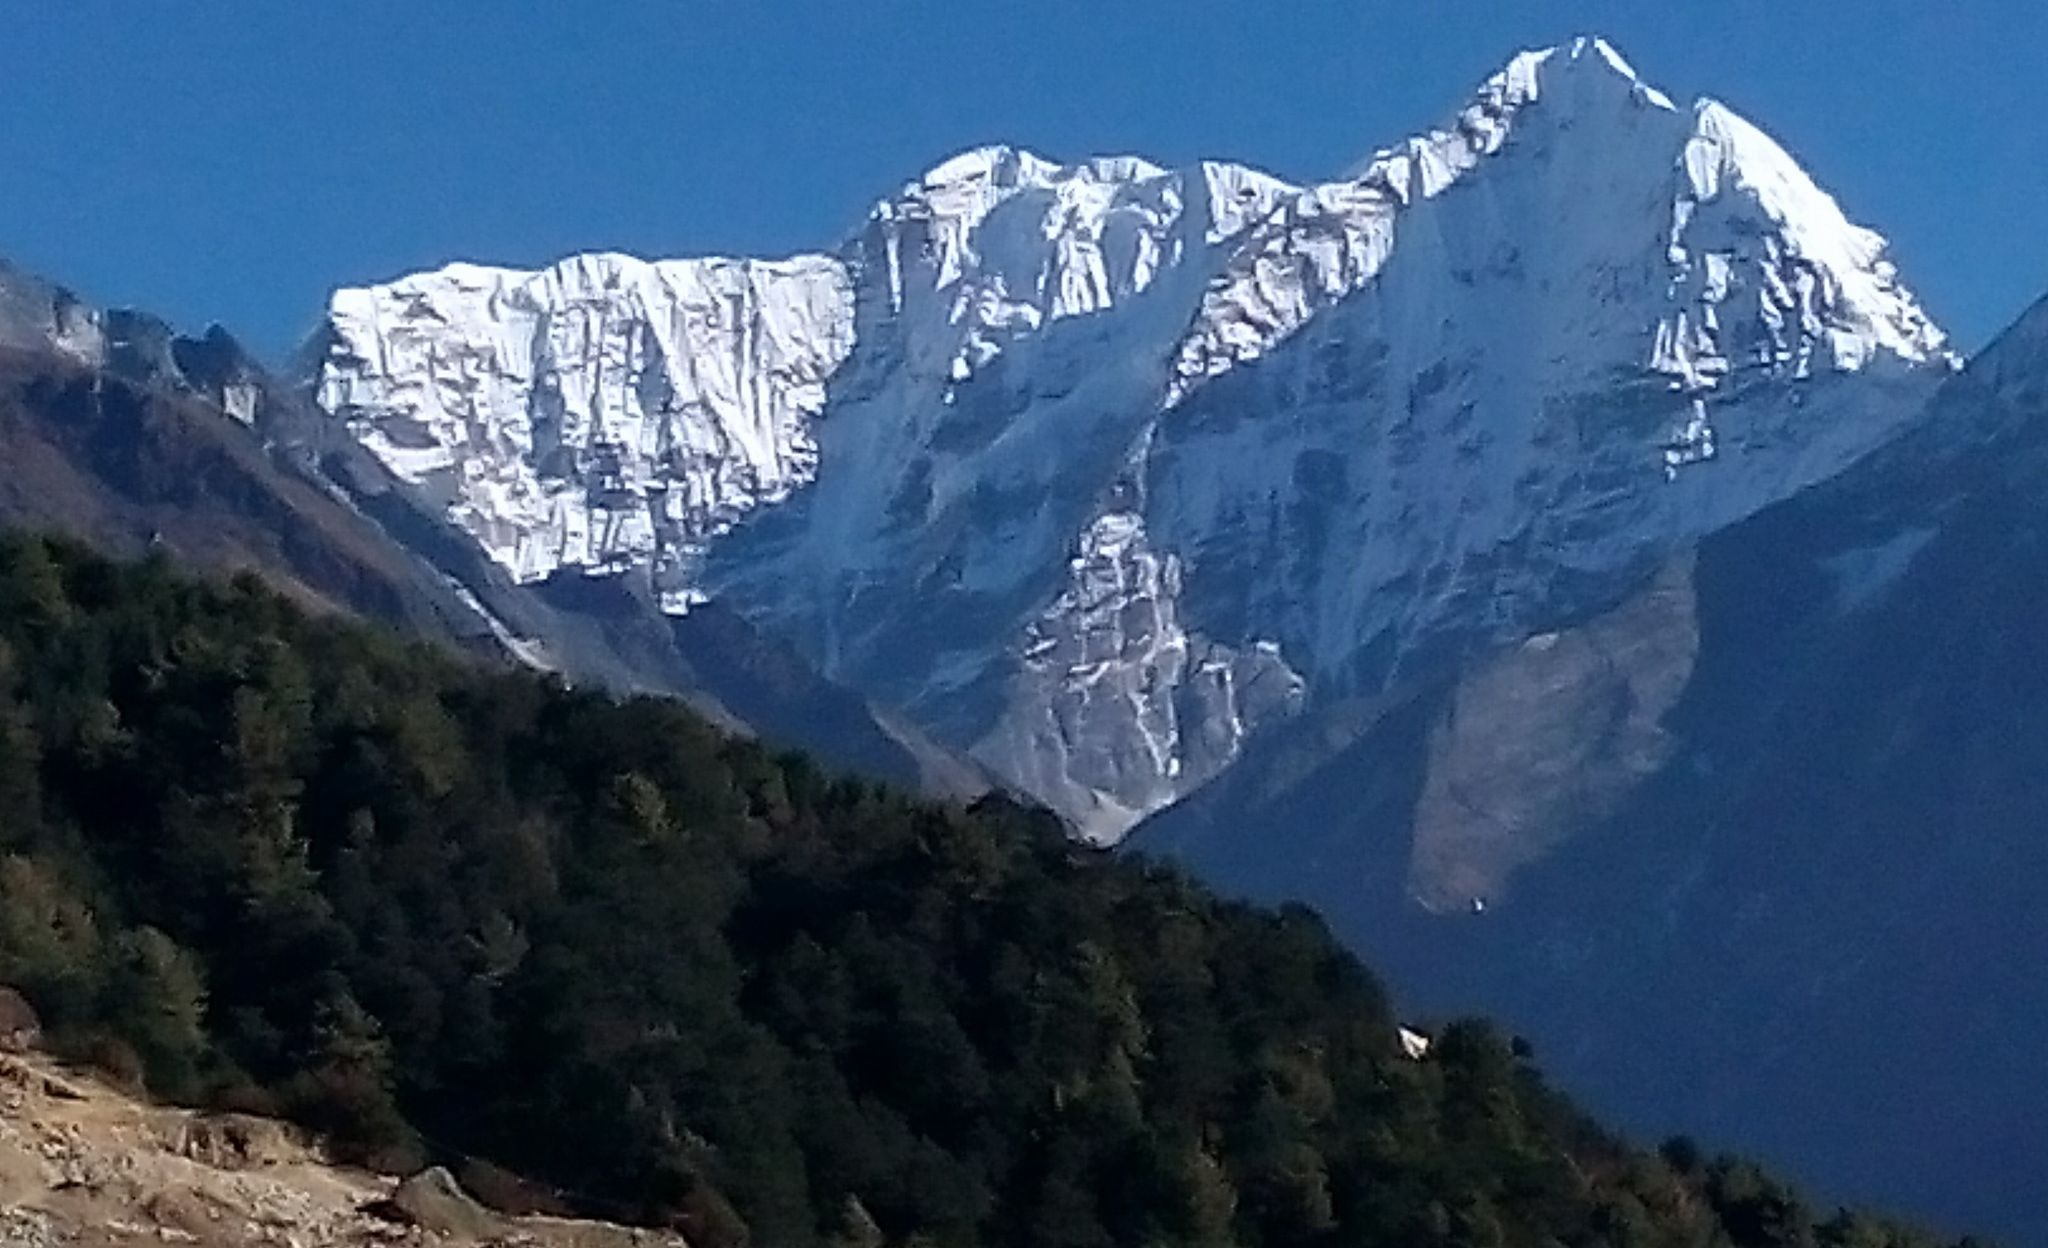 Kusum Kanguru above Dudh Kosi Valley